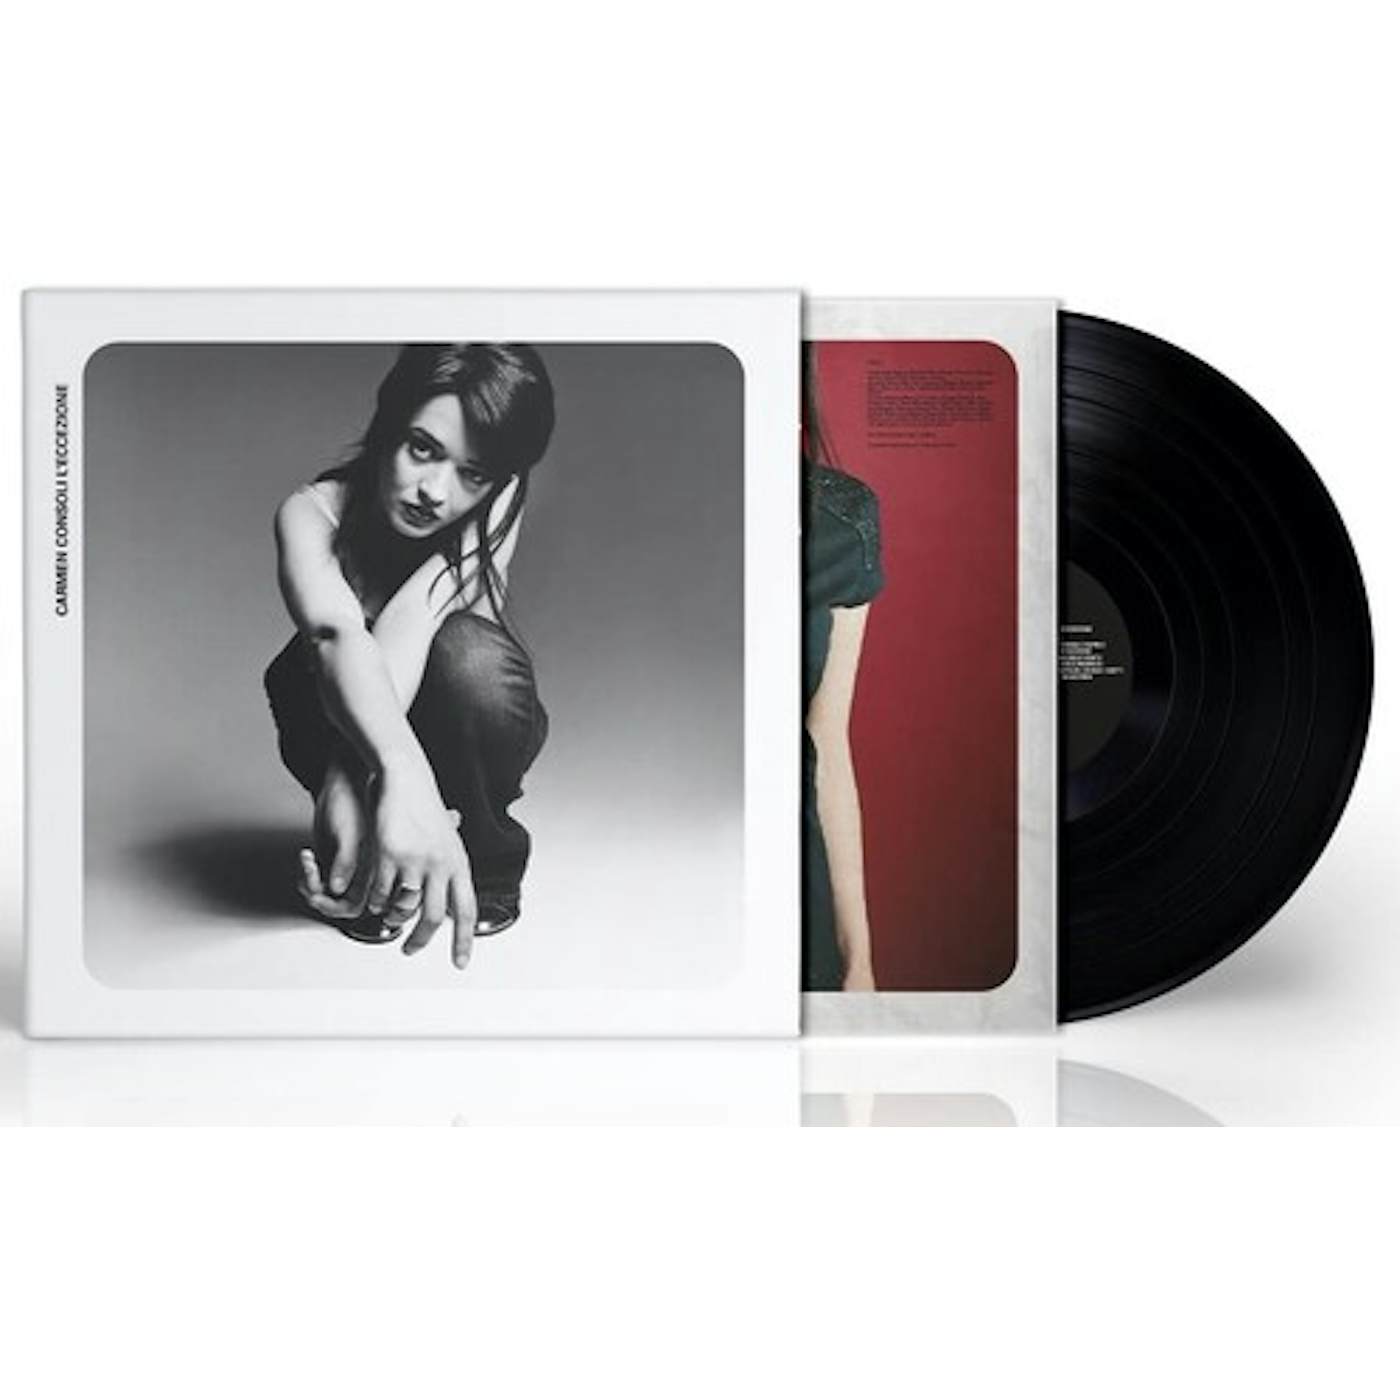 Carmen Consoli L'Eccezione vinyl record